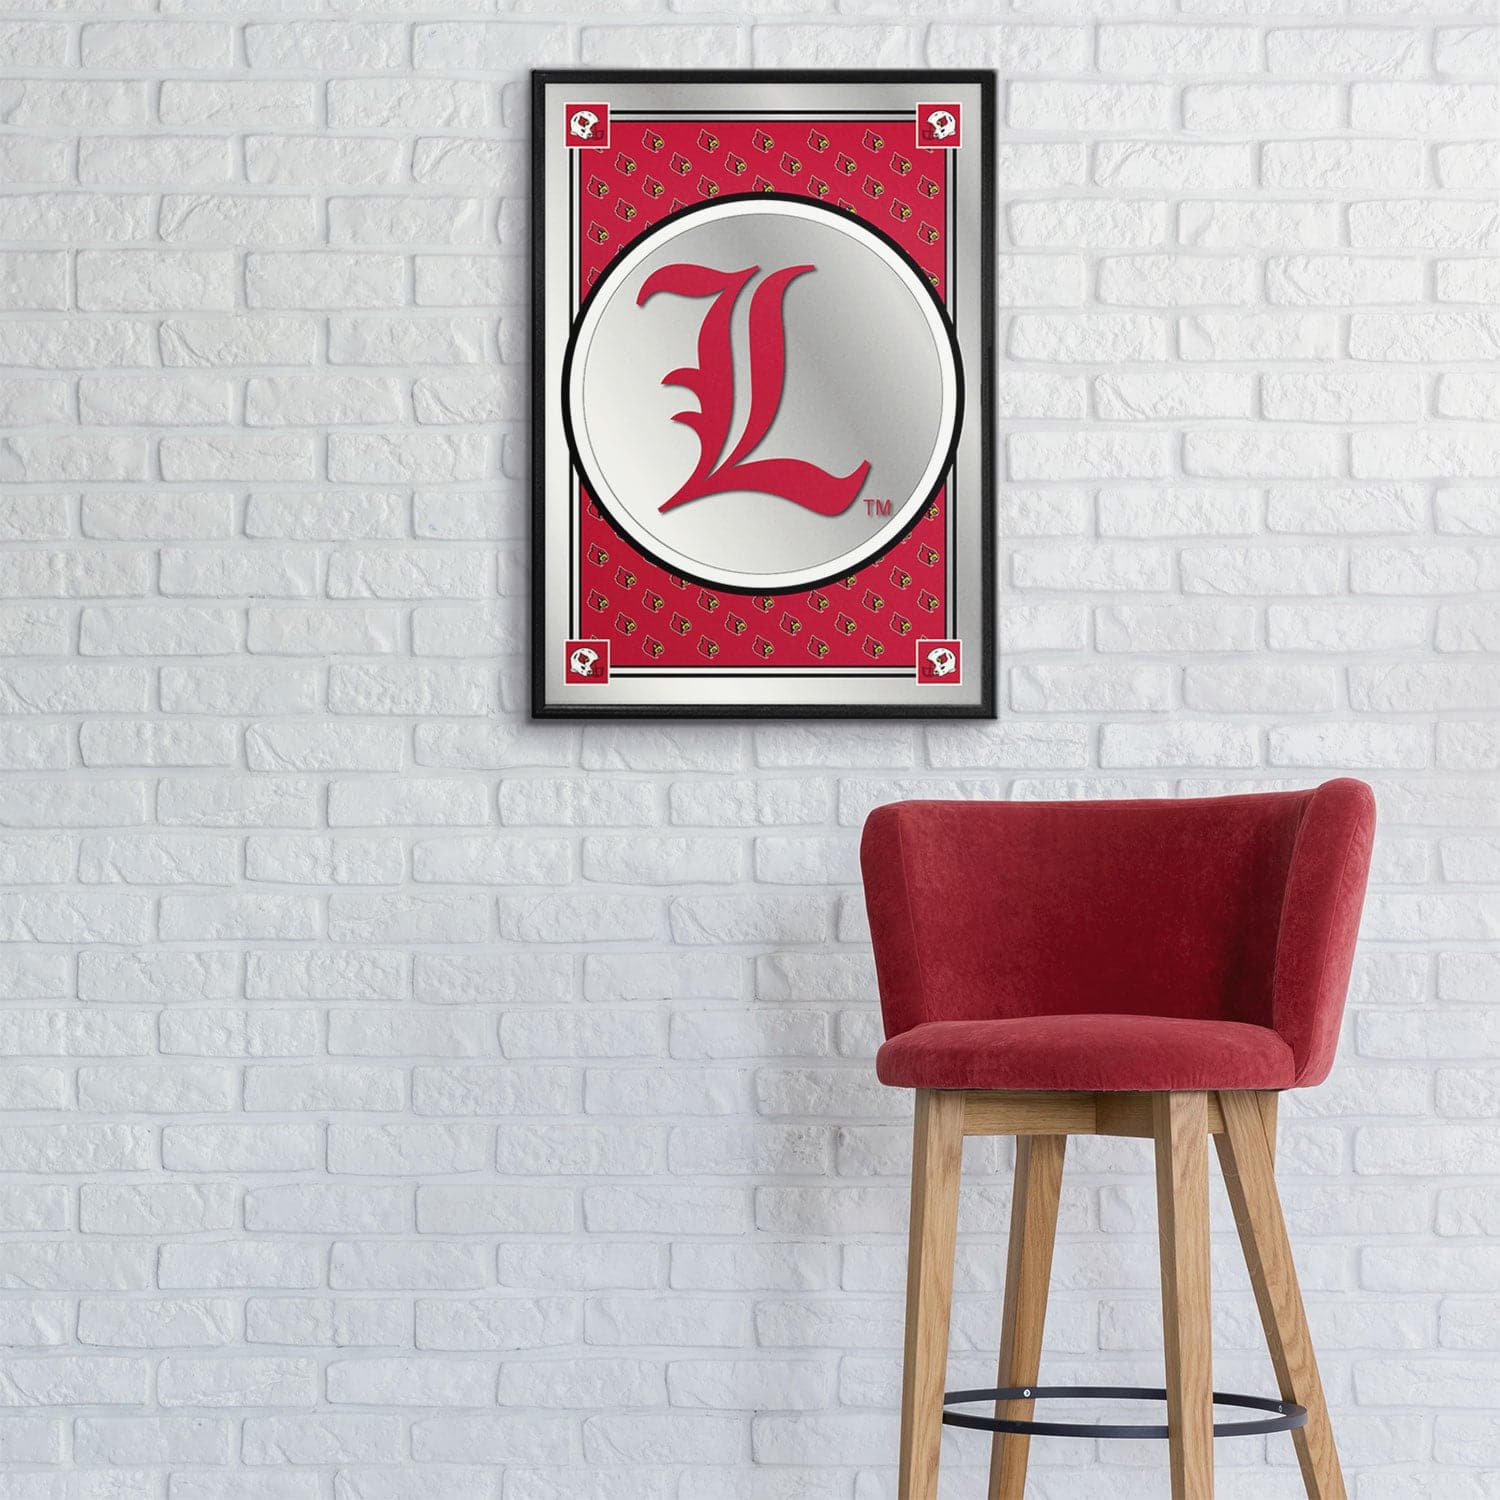 Louisville Cardinals Team Spirit, L - Framed Mirrored Wall Sign